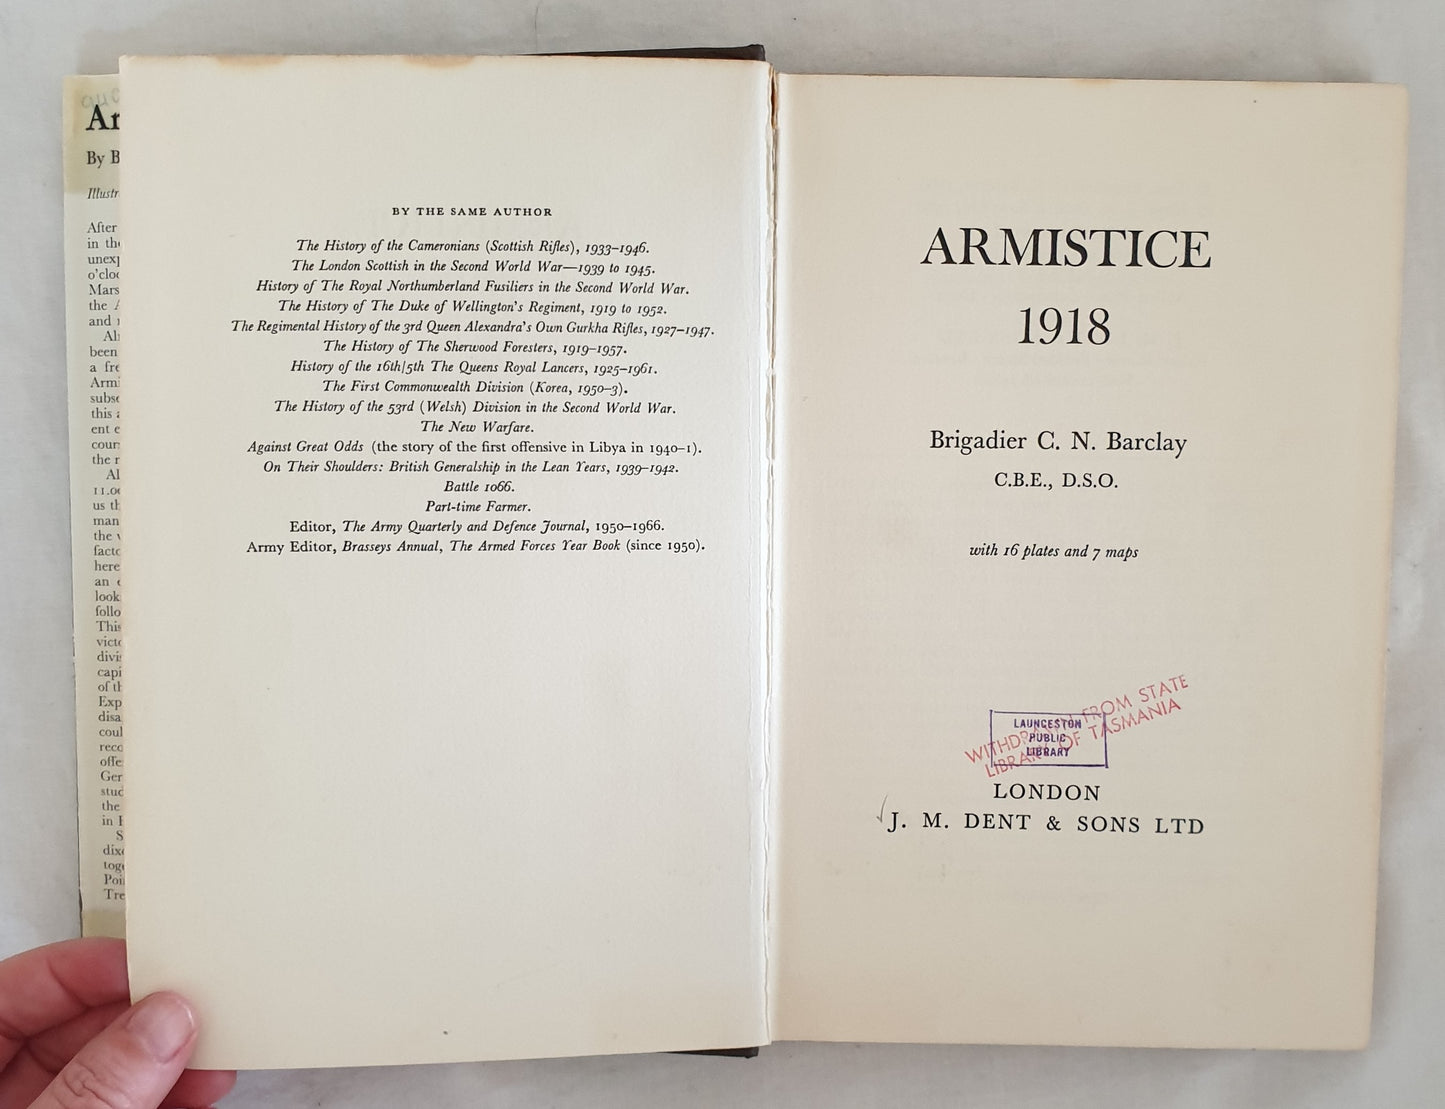 Armistice 1918 by Brigadier C. N. Barclay